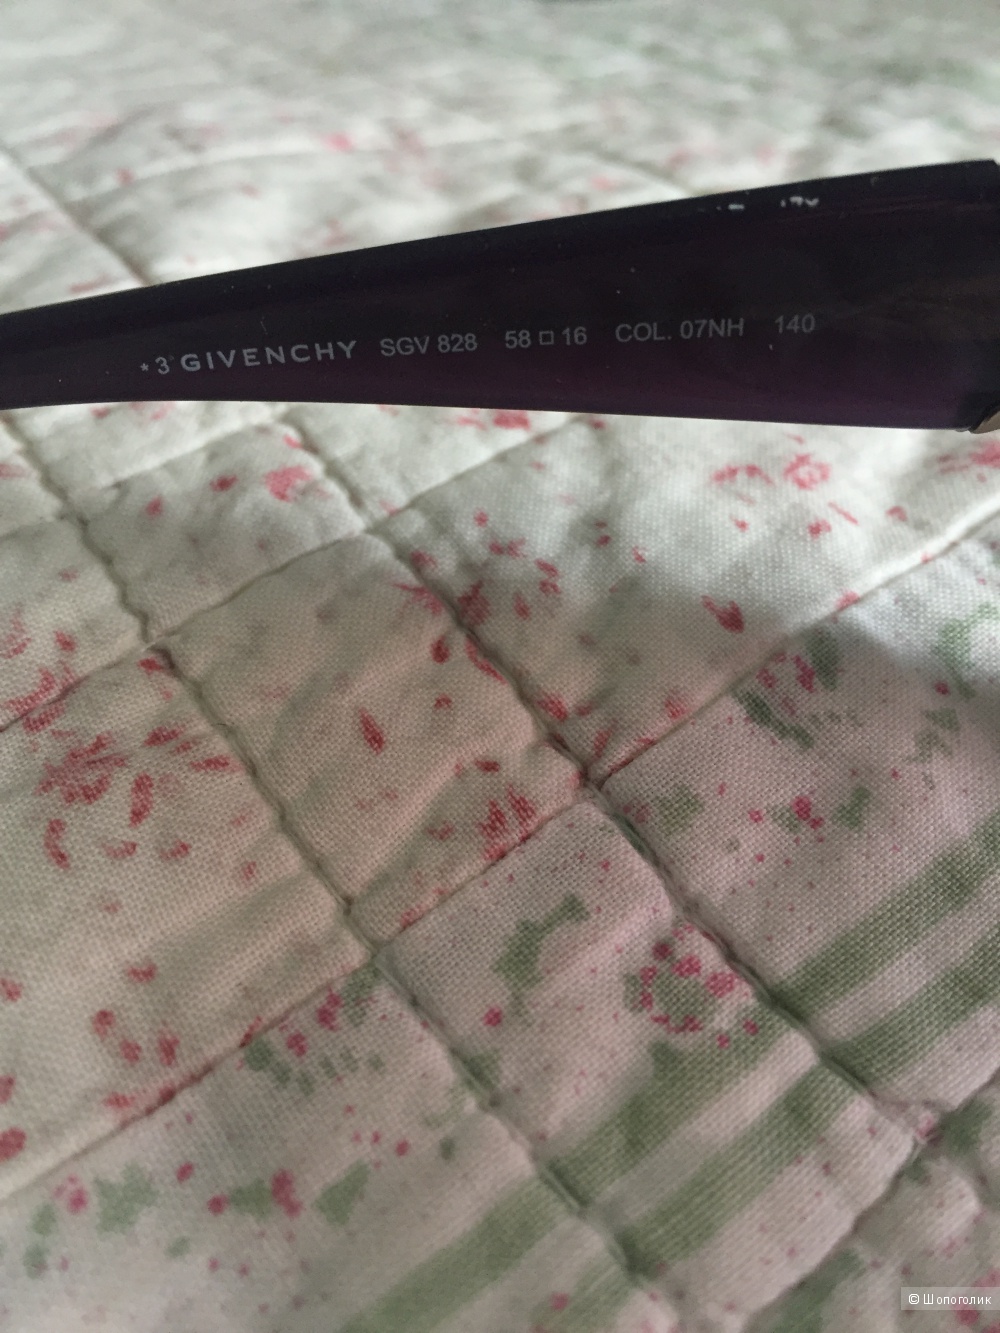 Новые солнцезащитные очки Givenchy (оригинал)